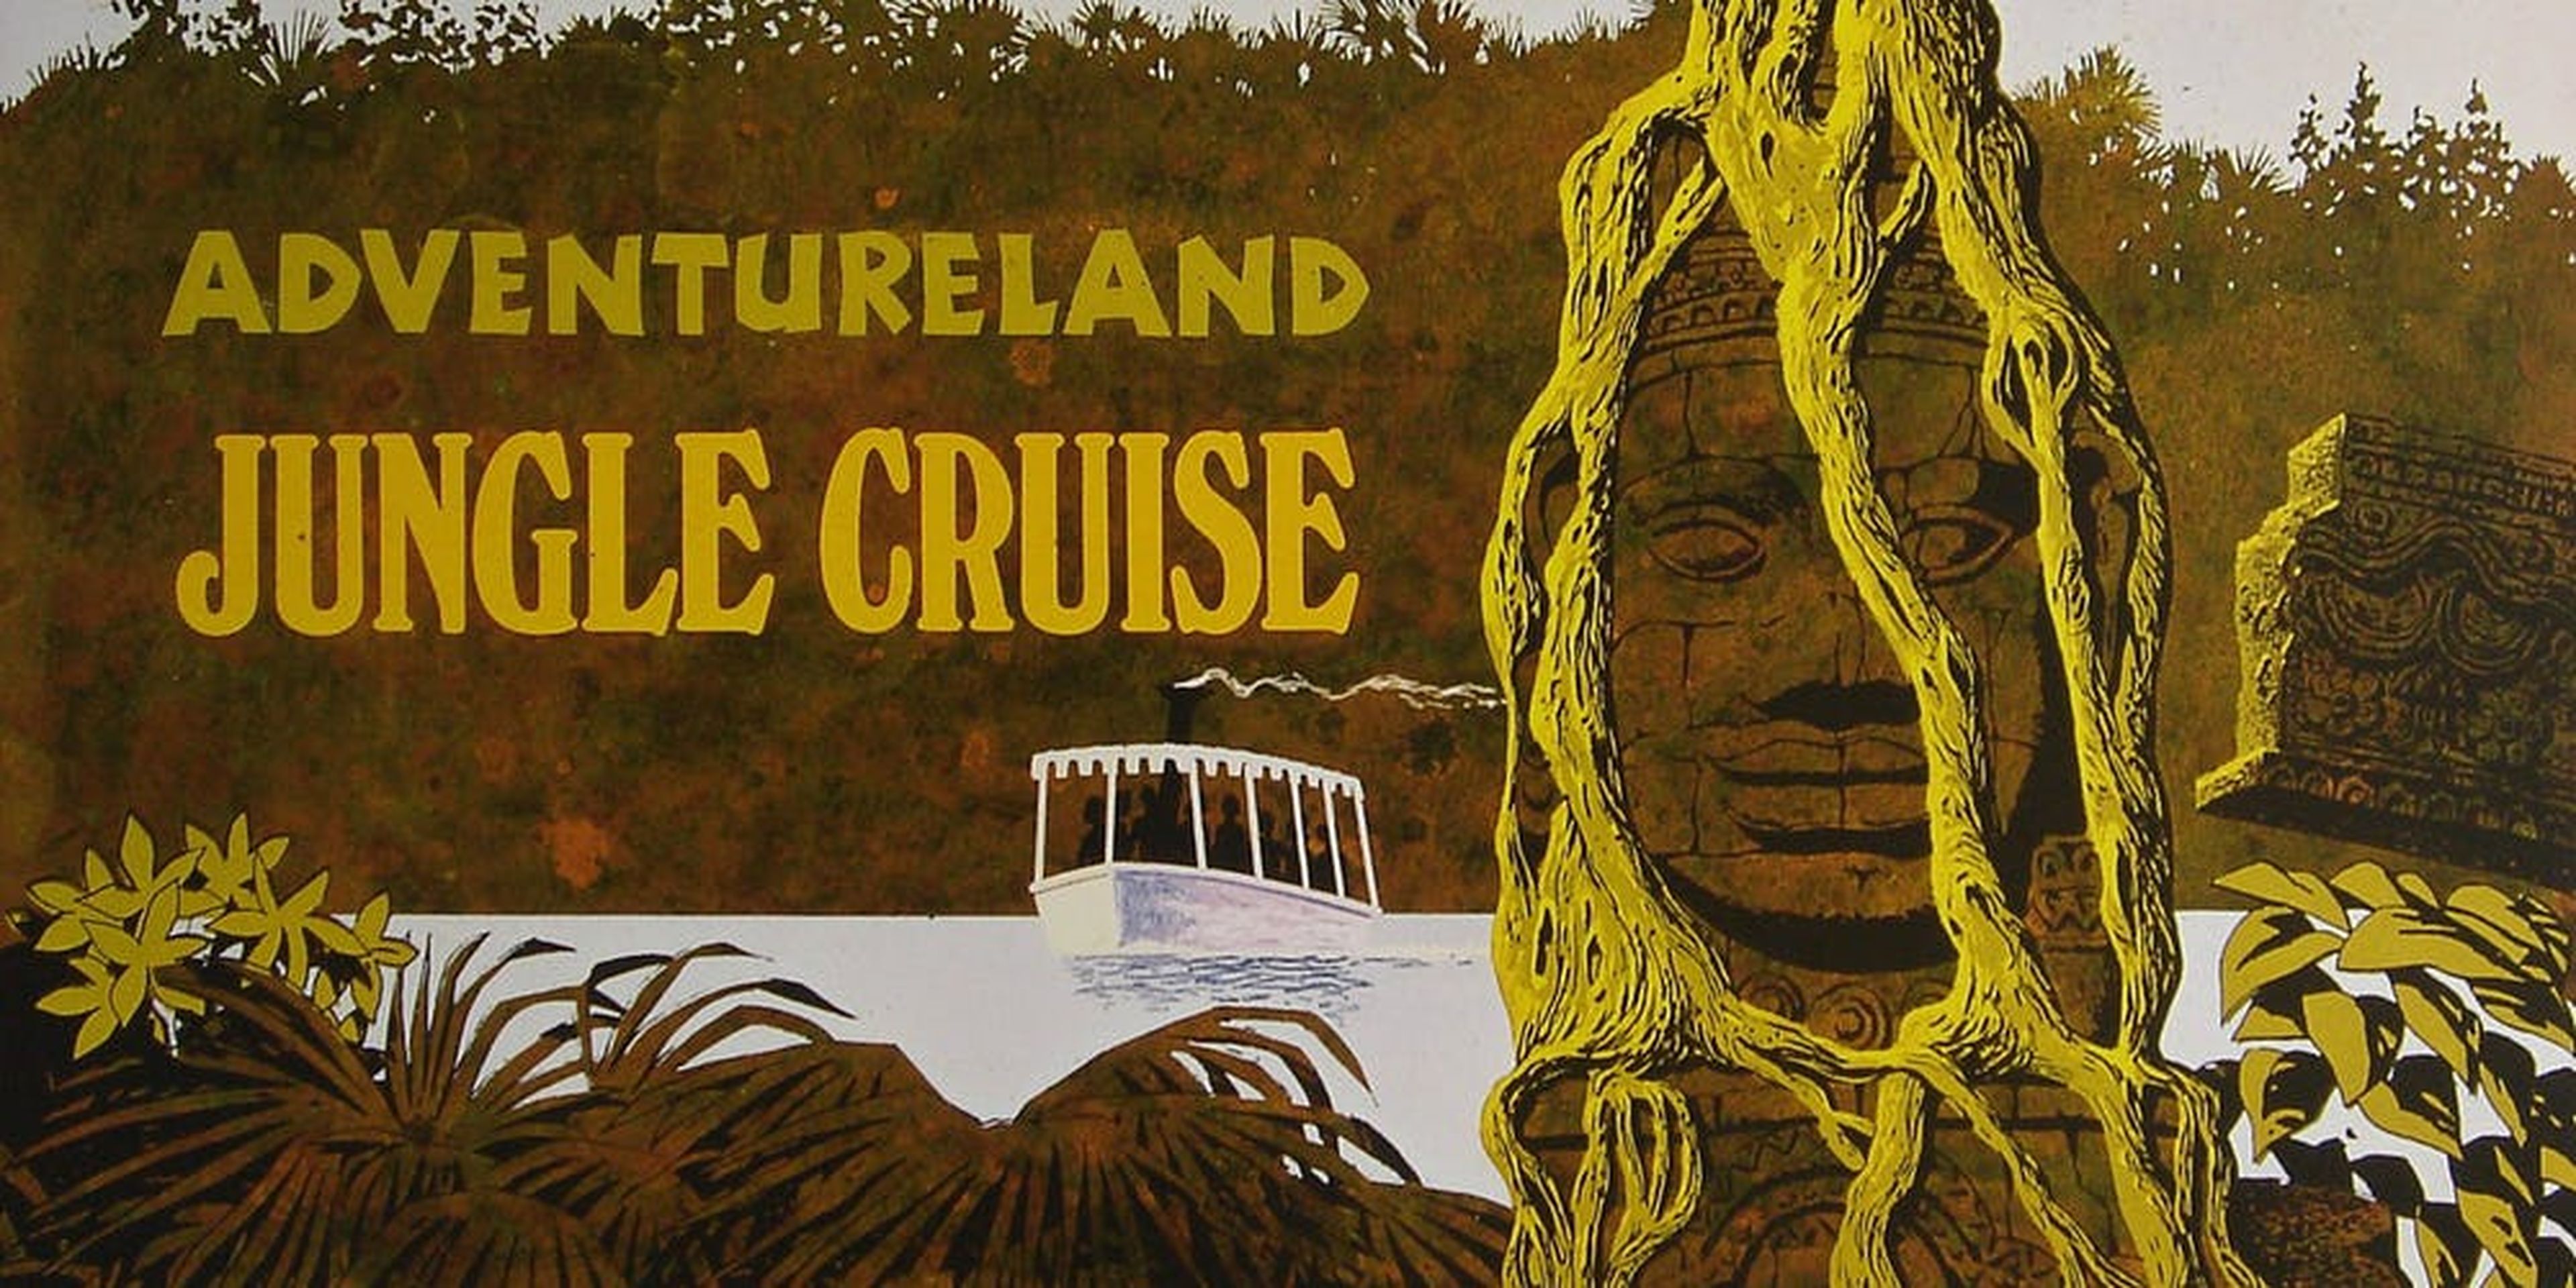 Jungle Cruise, la nueva película de The Rock, será una aventura al estilo Indiana Jones